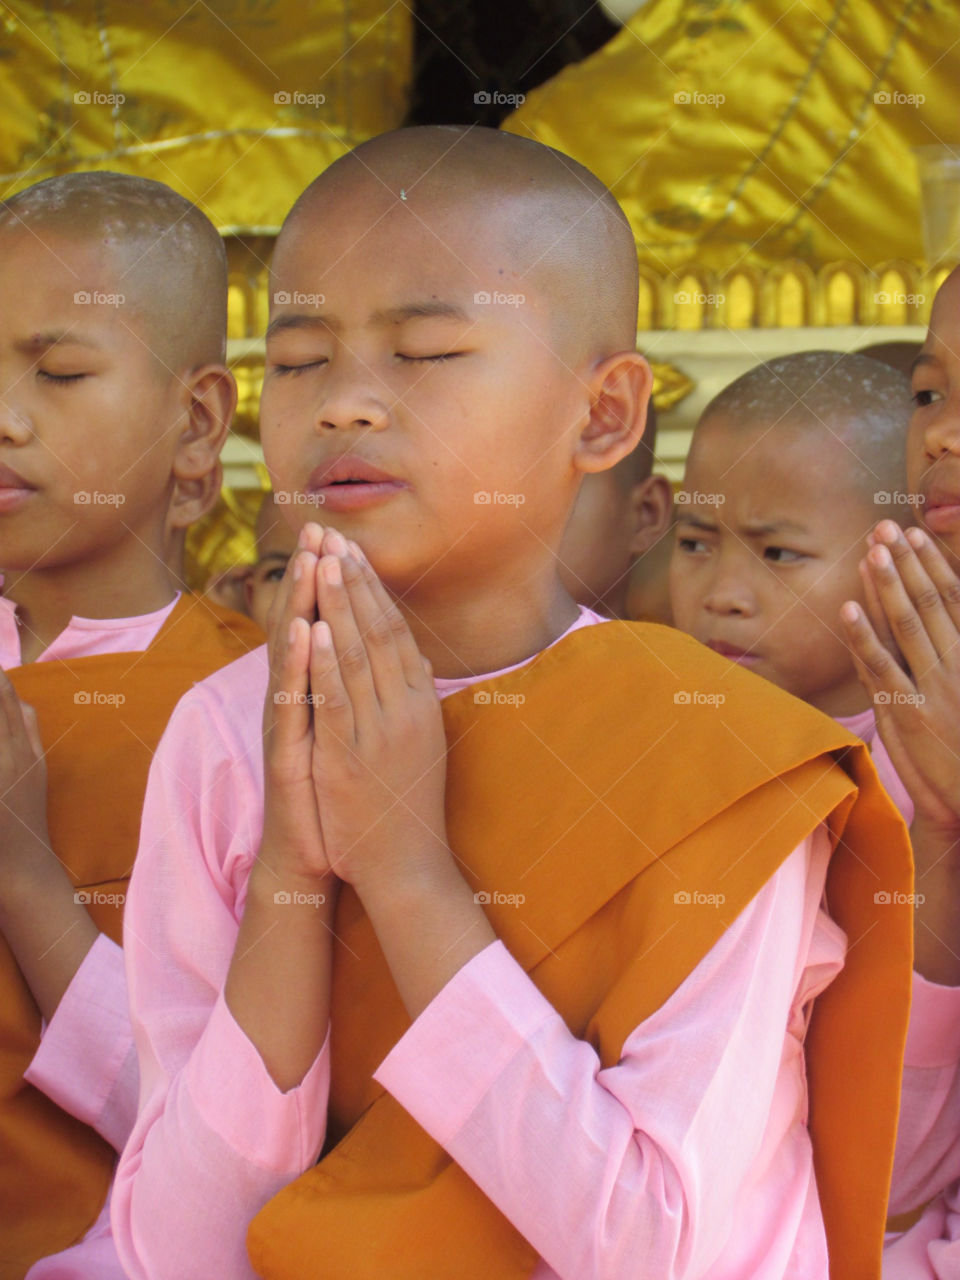 Child nun praying